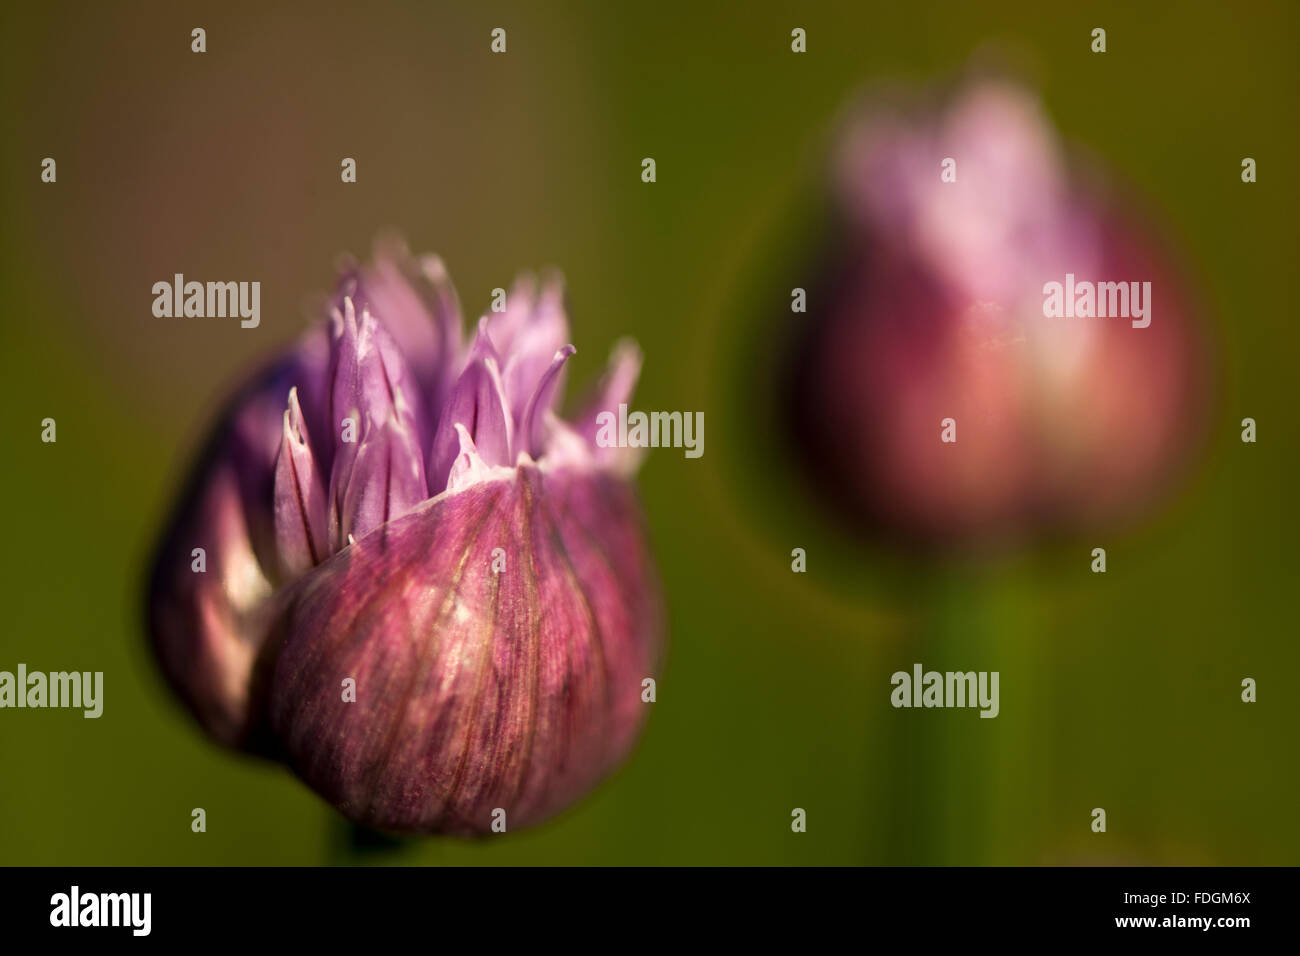 La ciboulette une précieuse herbe (Allium schoenoprasum) photographié dans un jardin anglais avec un objectif macro pour concentrer l'attention Banque D'Images